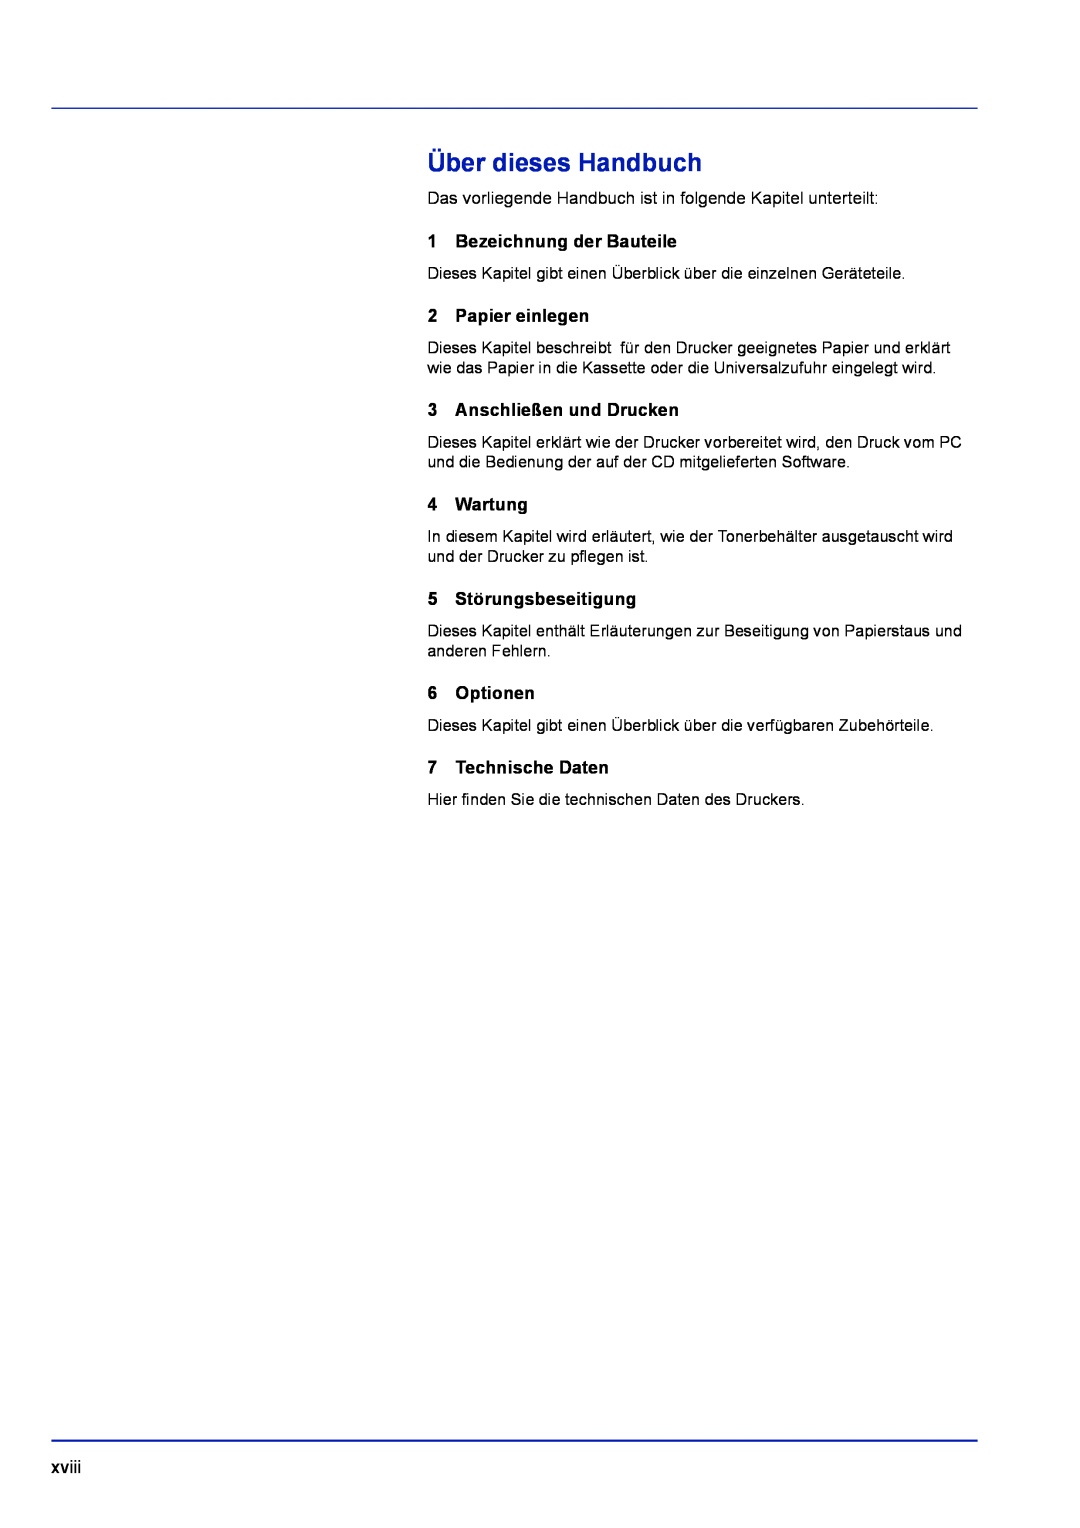 Kyocera FS-1120D manual Über dieses Handbuch, Bezeichnung der Bauteile, Papier einlegen, Anschließen und Drucken, Wartung 